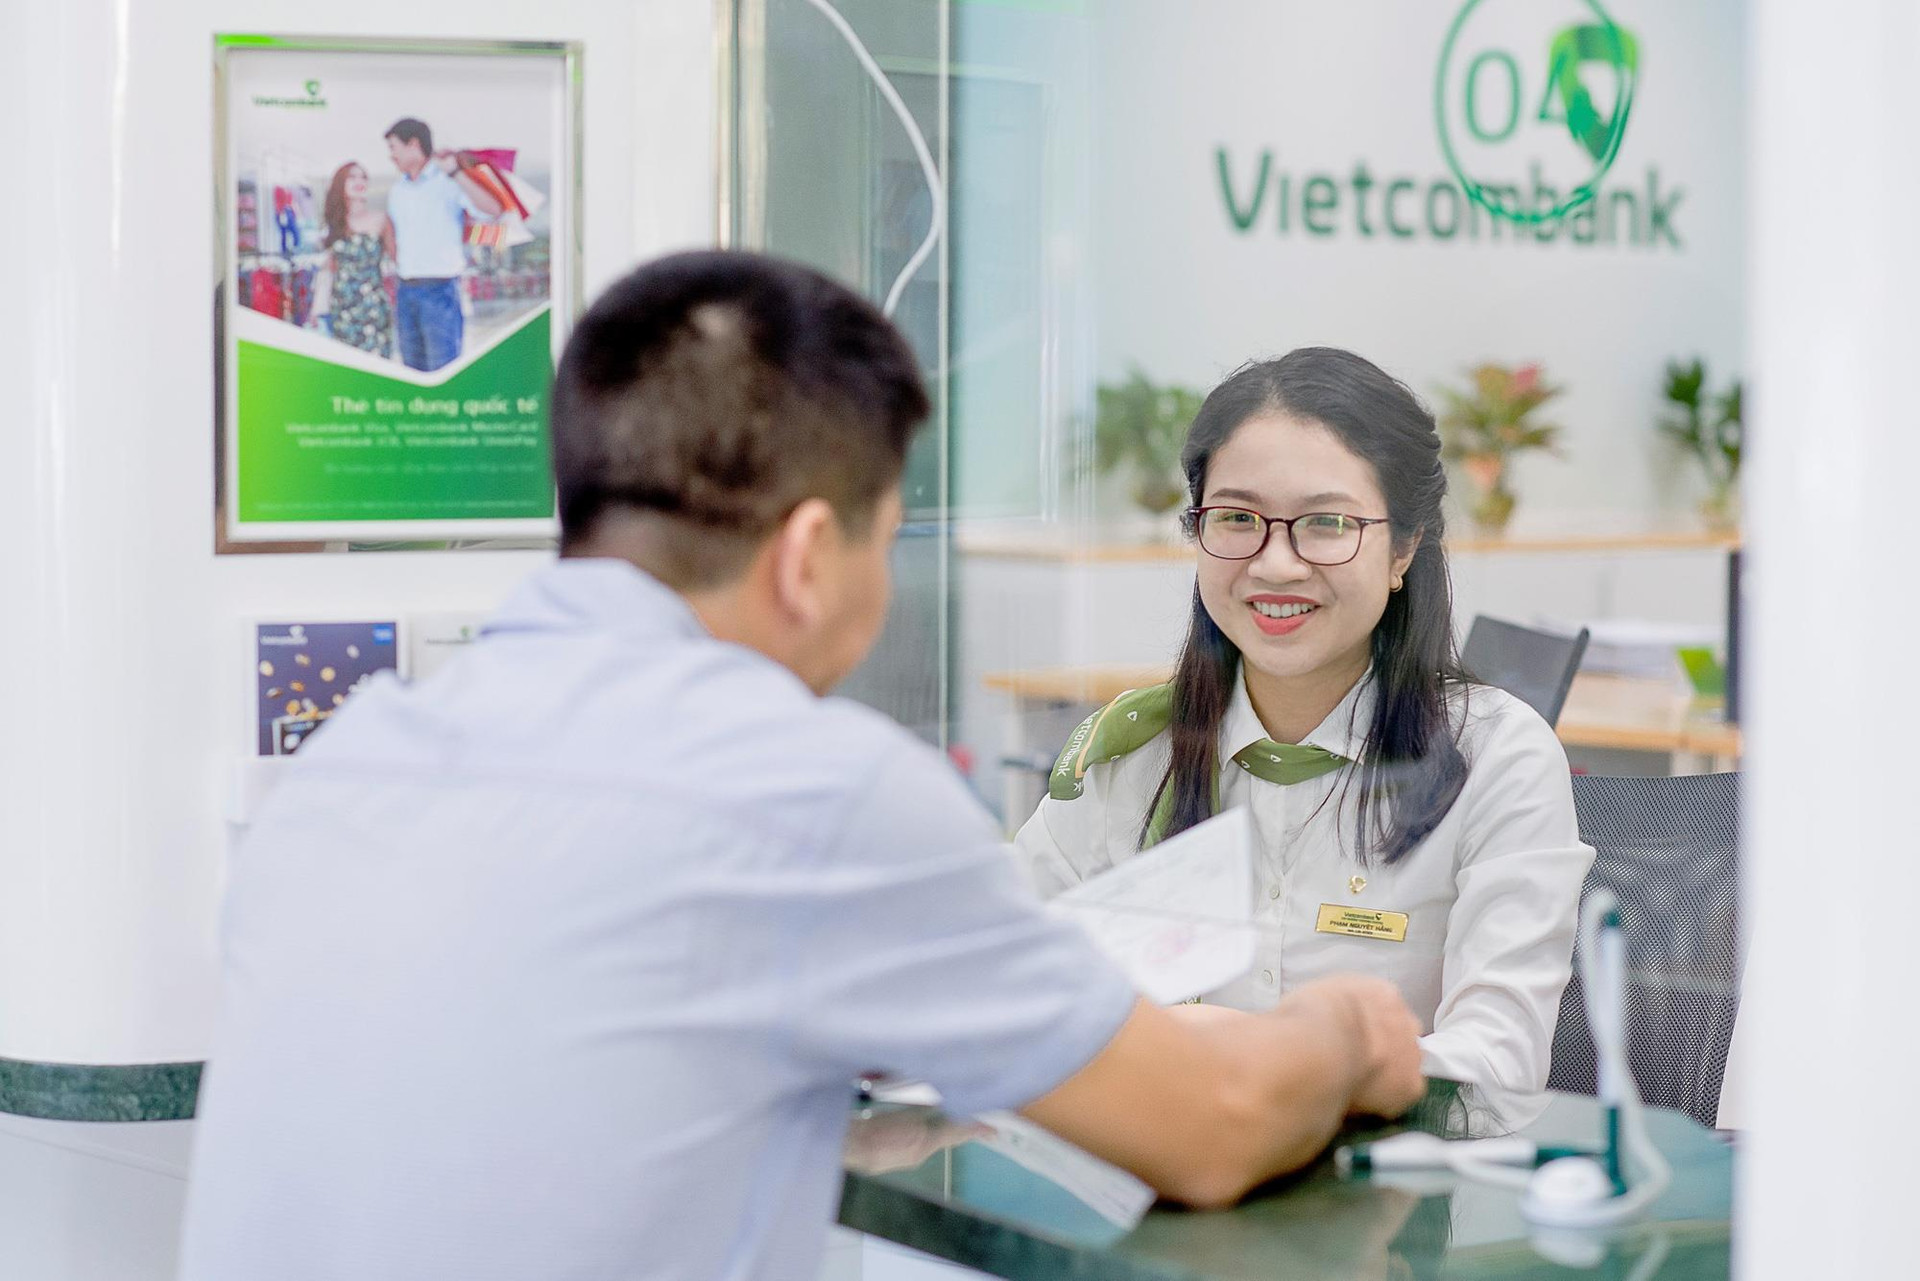 Ngân hàng lớn nhất Việt Nam vừa chứng kiến cảnh 4 năm mới có 1 lần - Ảnh 1.